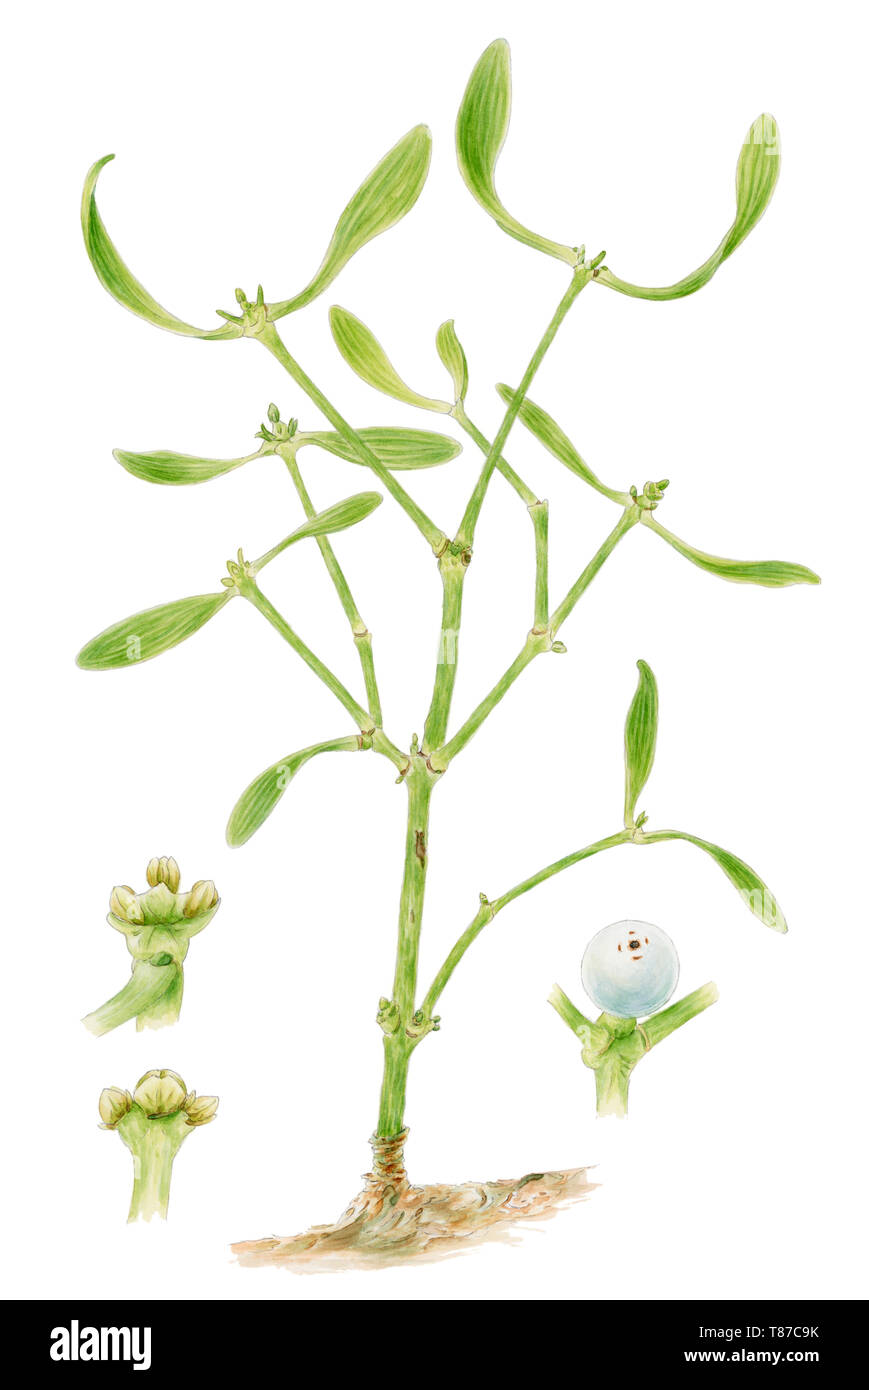 Le gui (Viscum album) dessin botanique sur fond blanc. A montré les fleurs mâles et femelles et de fruits. Crayon et aquarelle sur papier. Banque D'Images